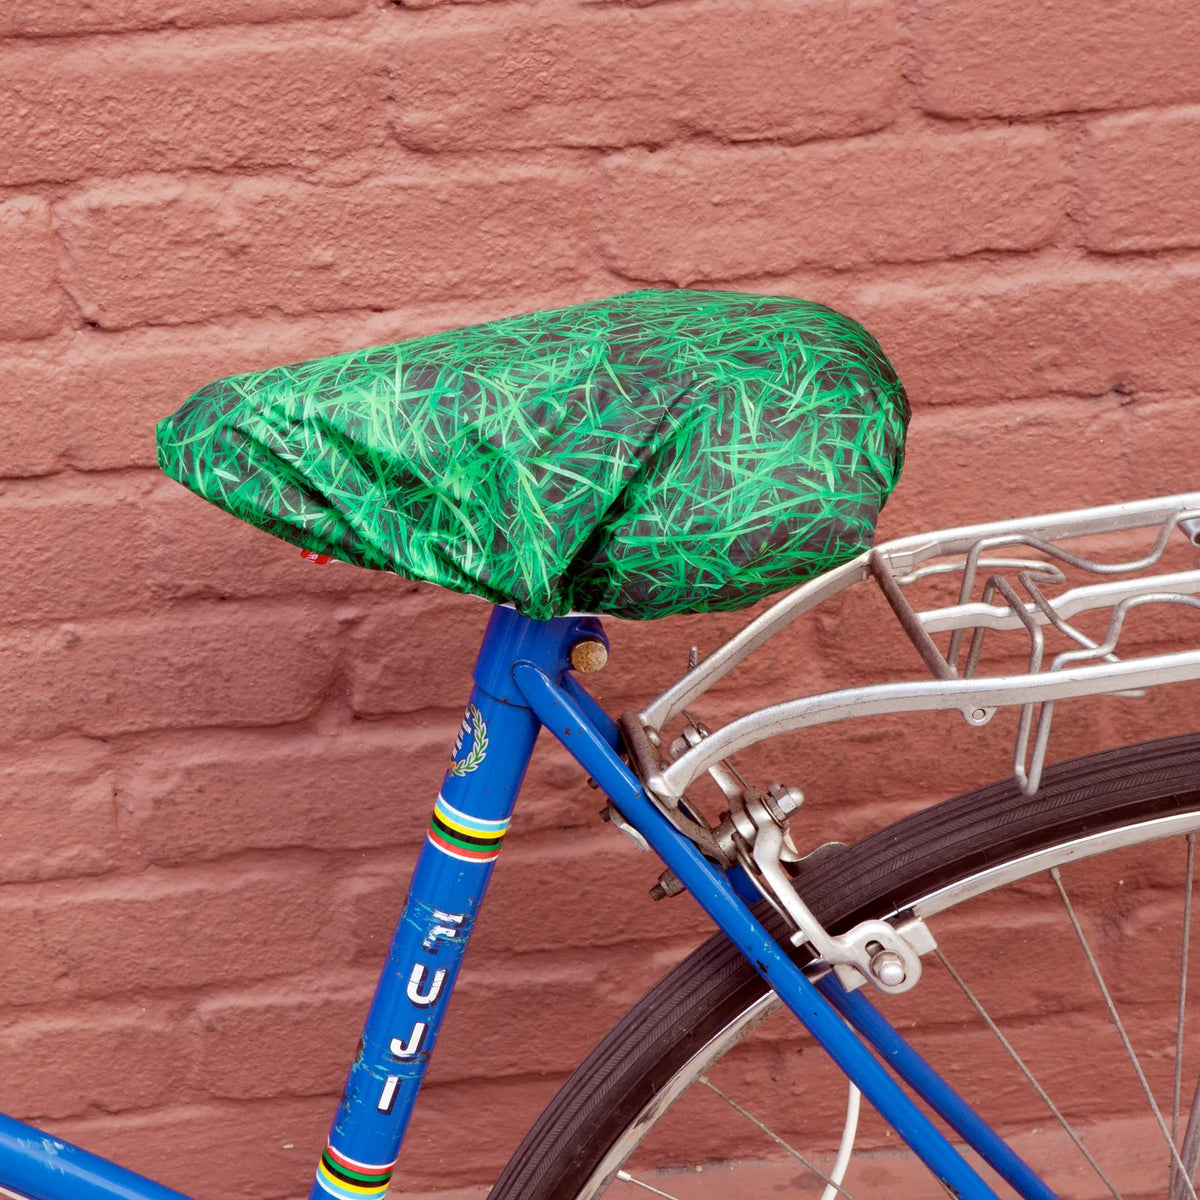 Bike Seat Cover